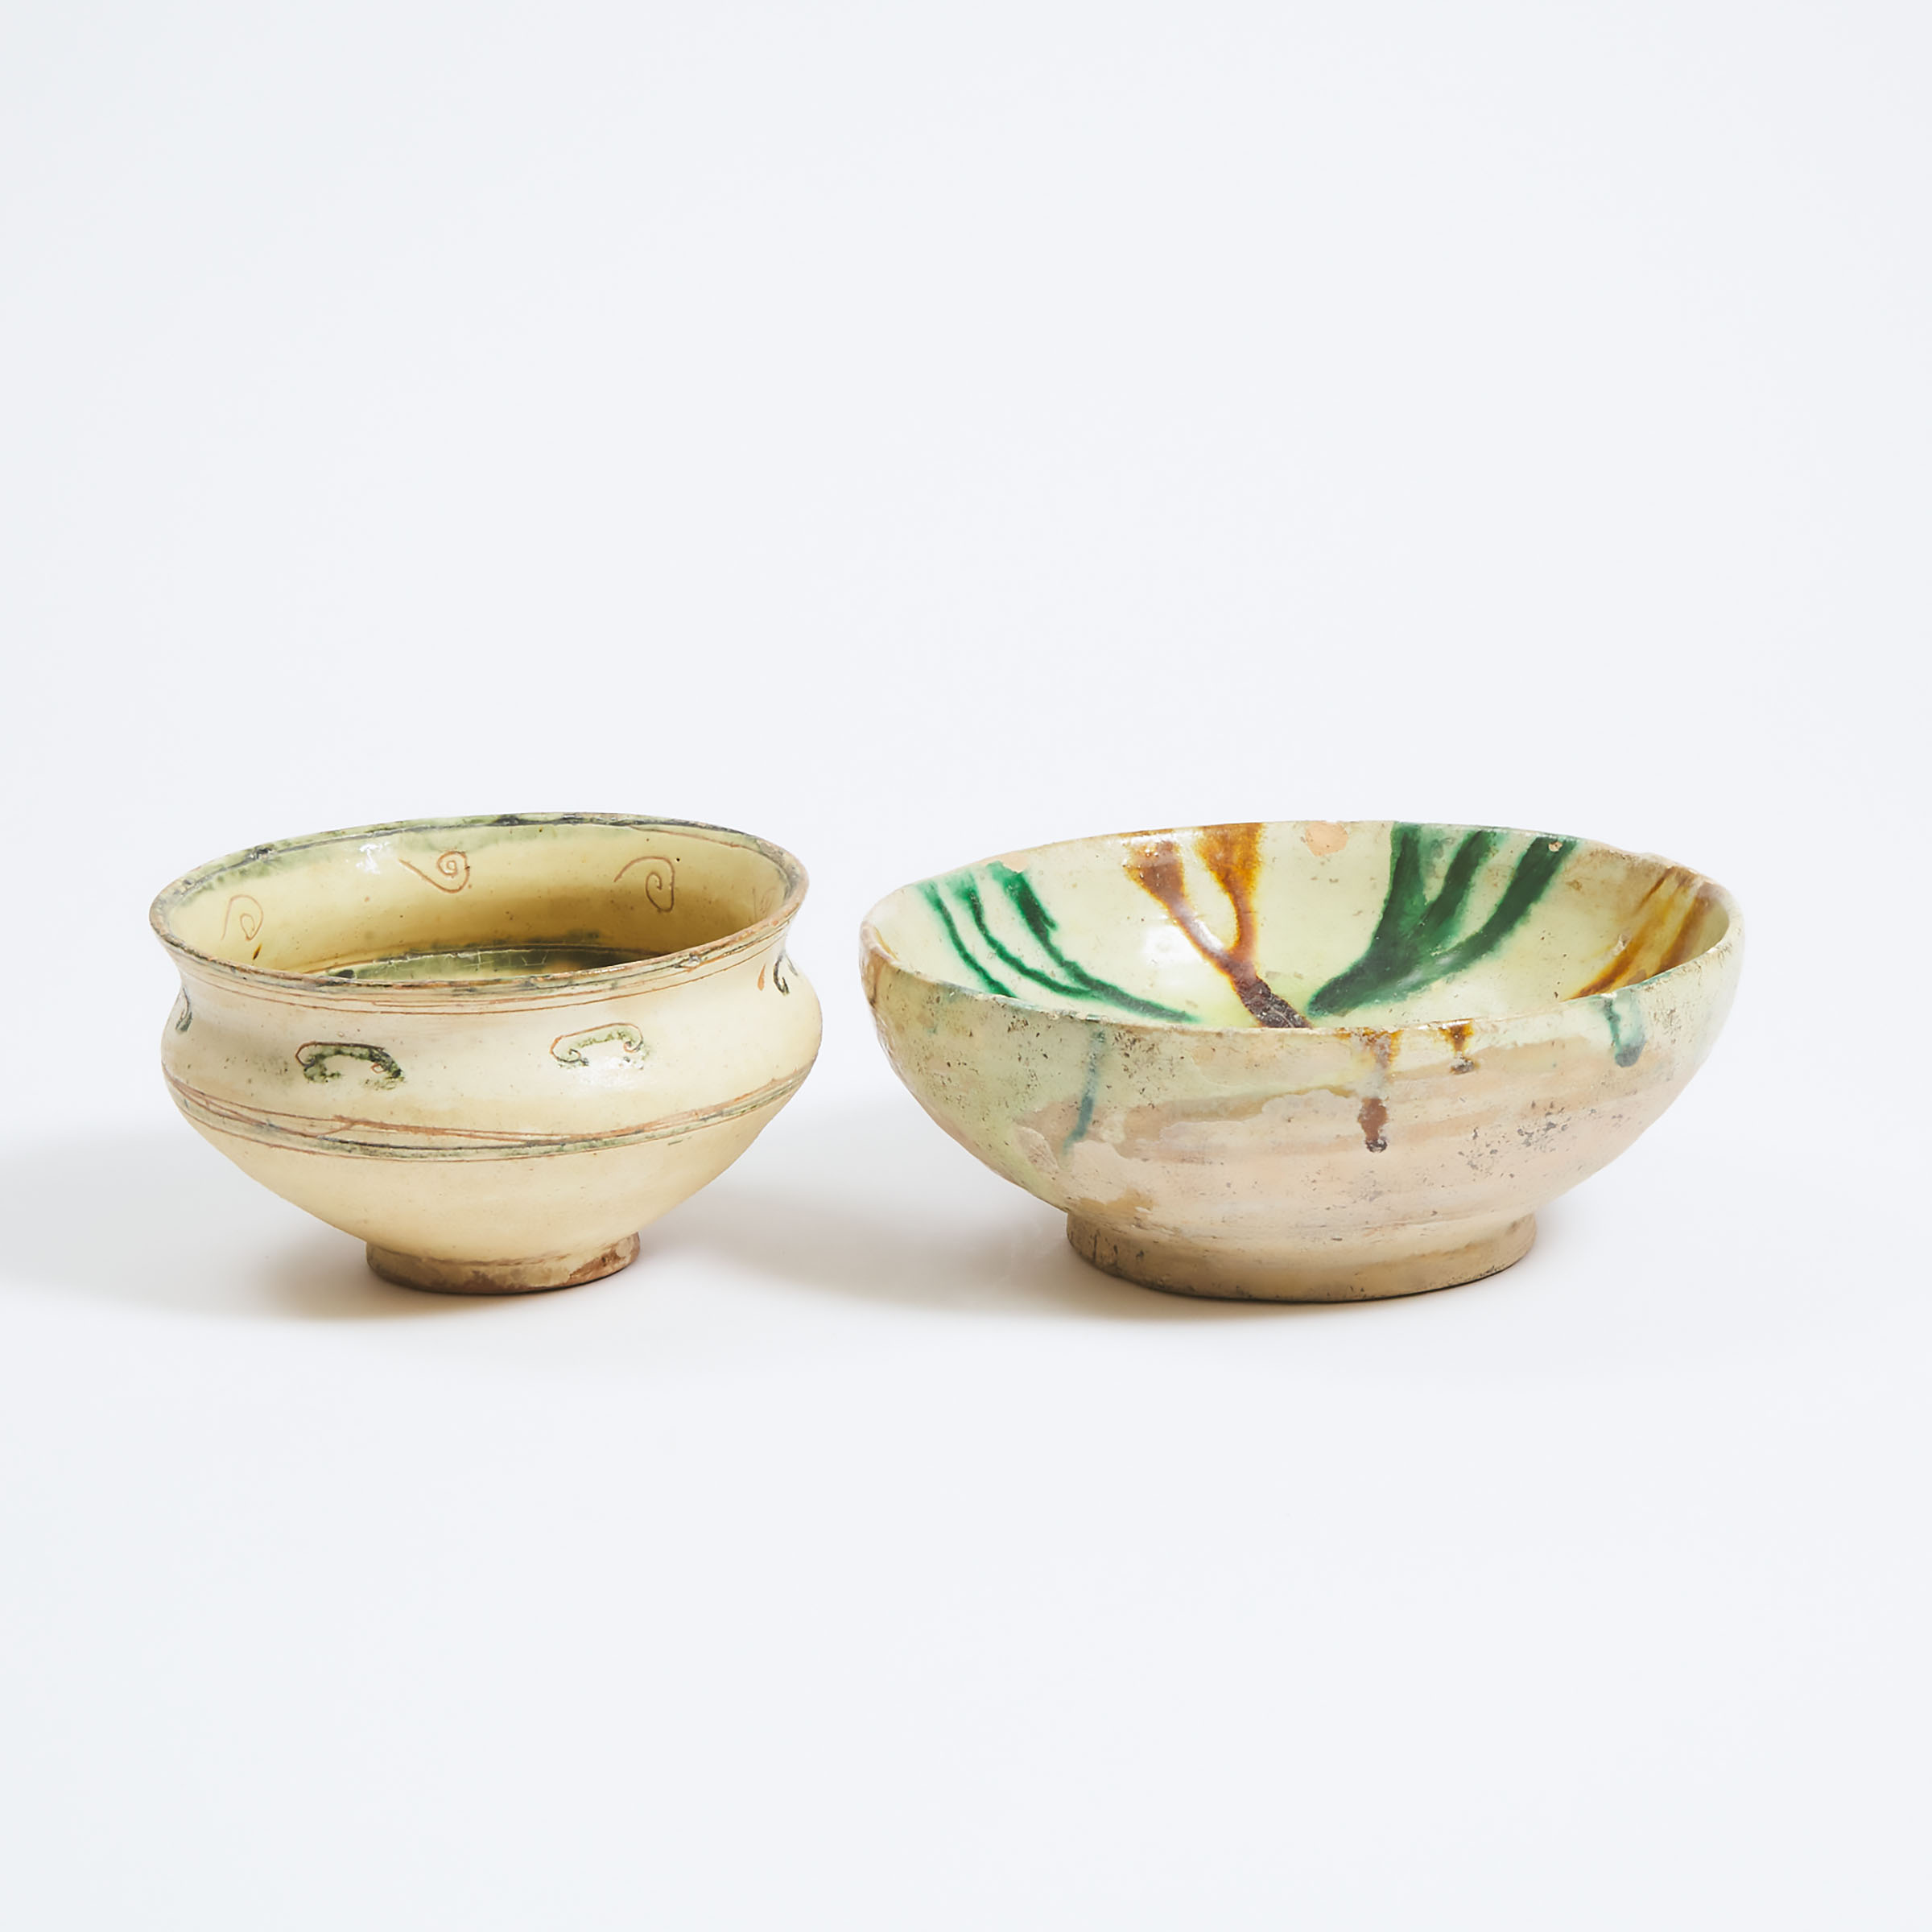 A Splashware Pottery Bowl, Together